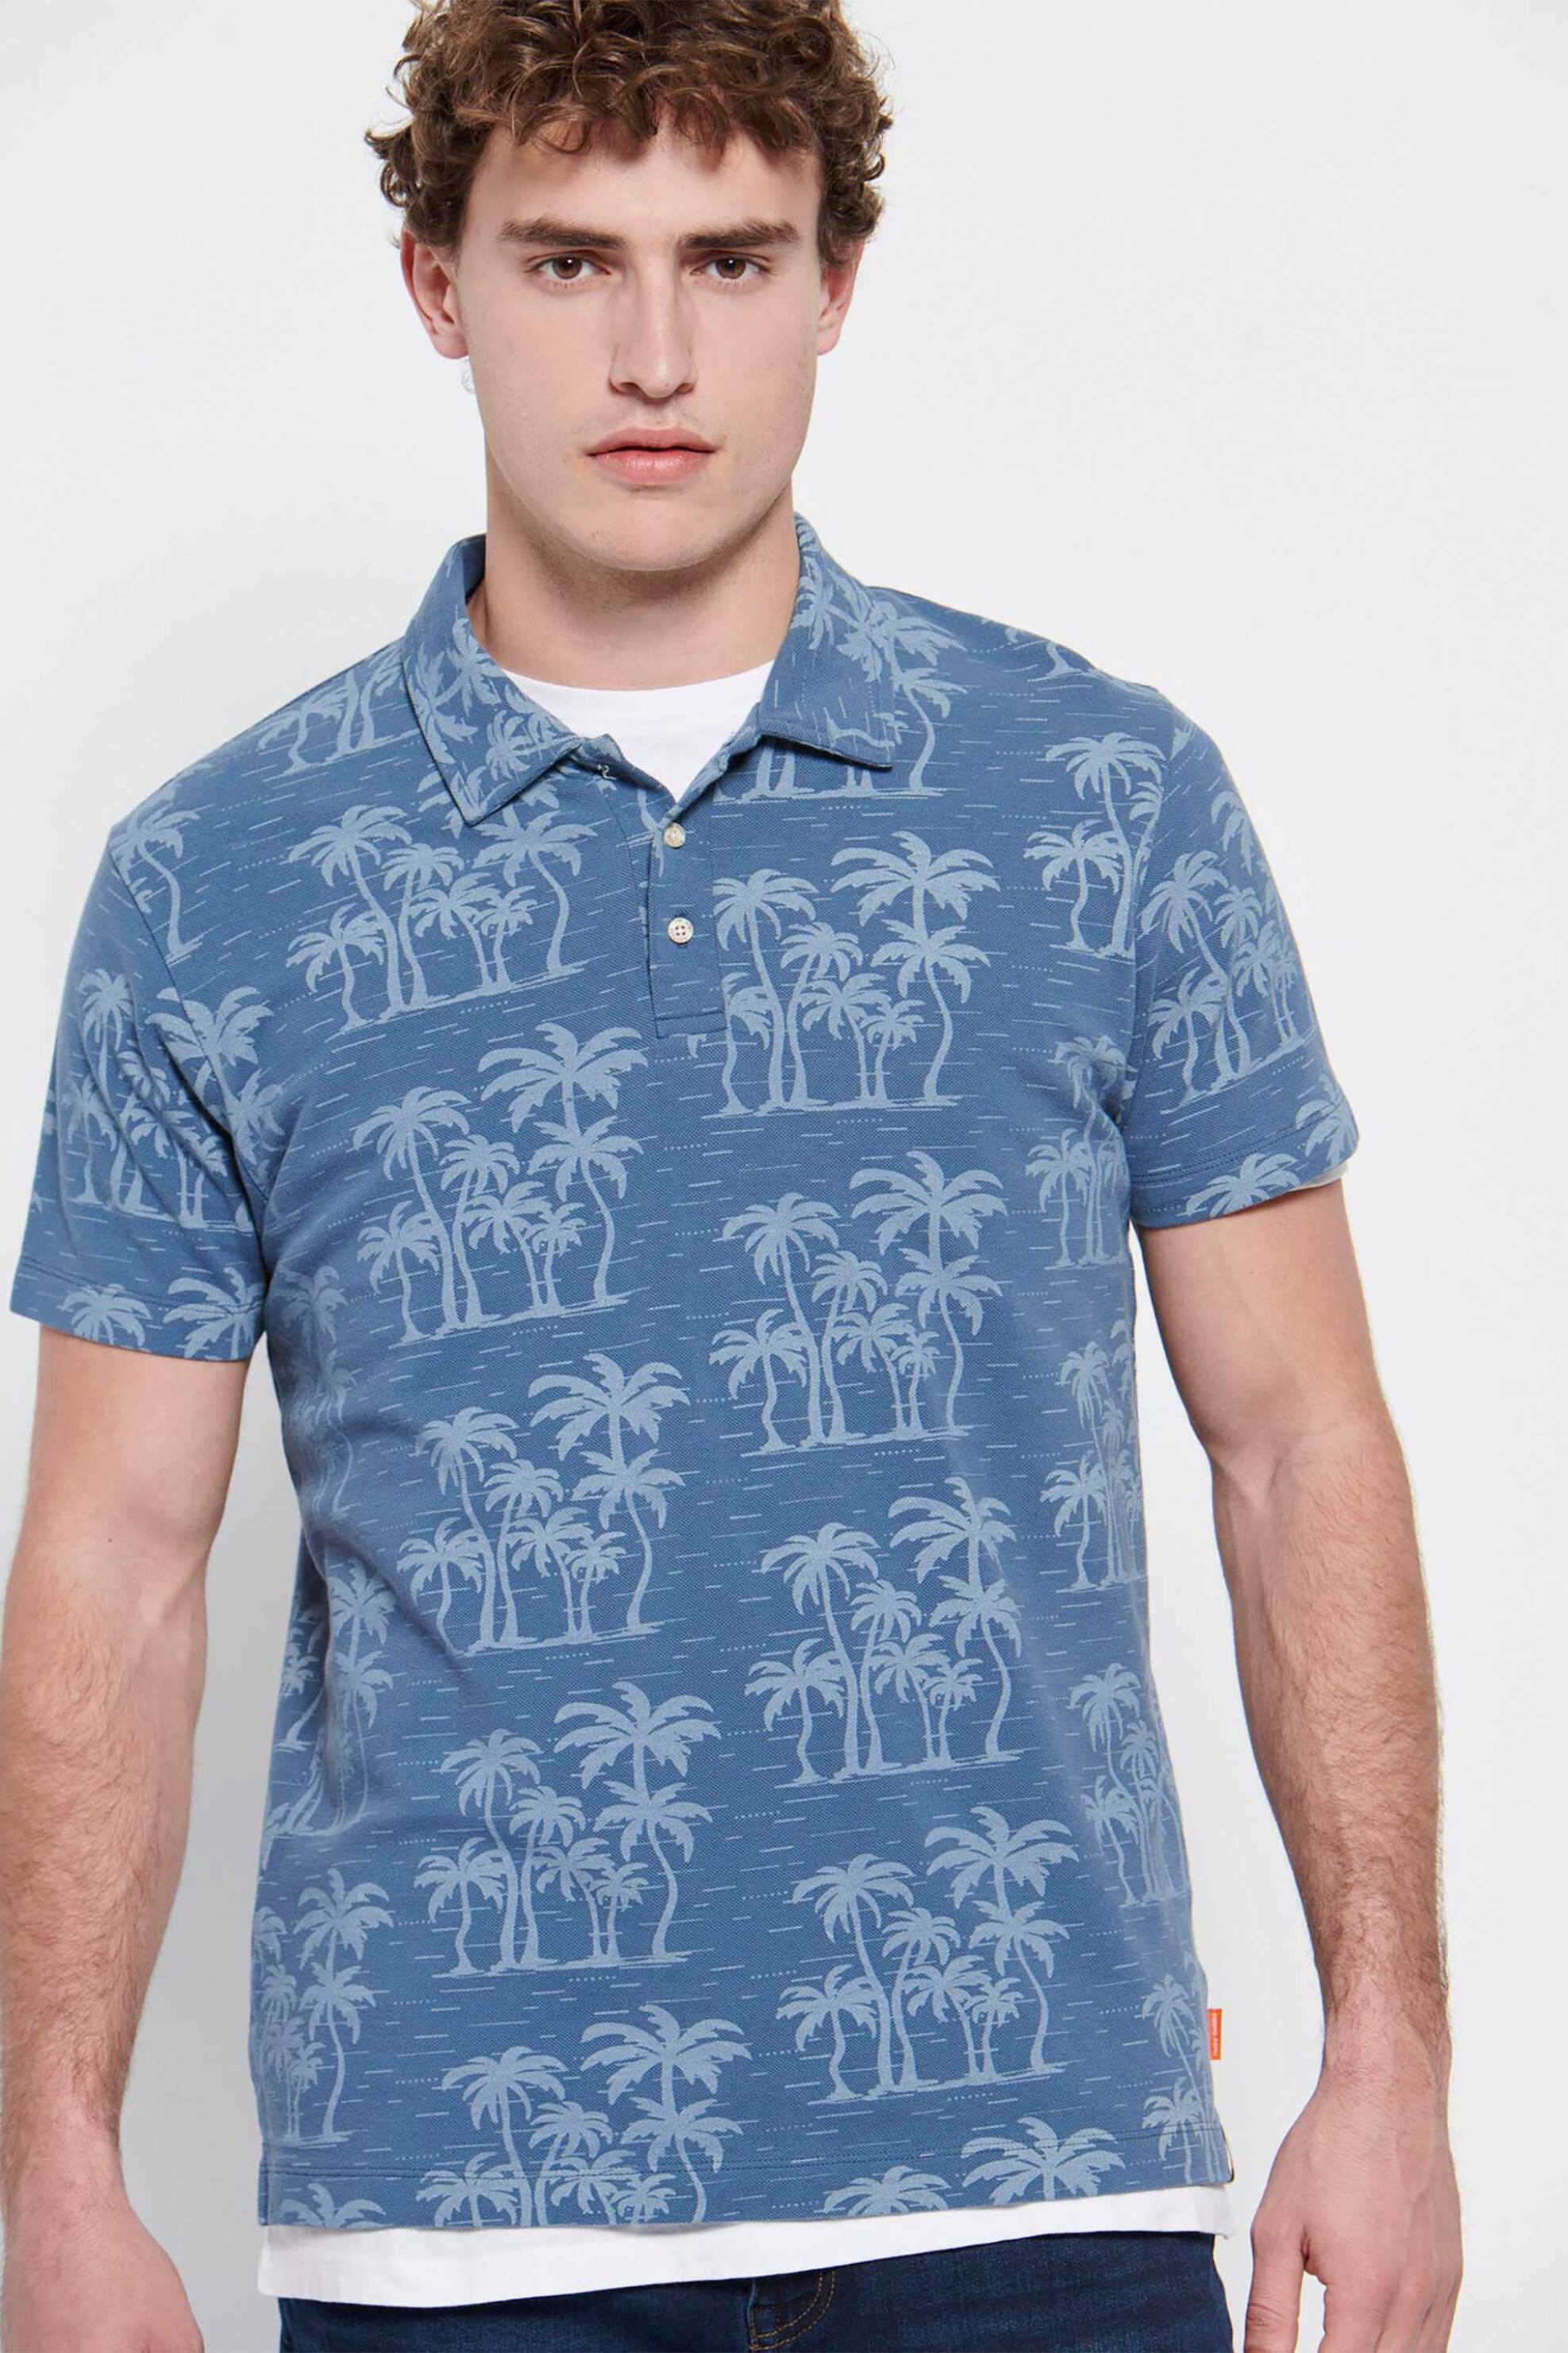 Ανδρική Μόδα > Ανδρικά Ρούχα > Ανδρικές Μπλούζες > Ανδρικές Μπλούζες Πολο Funky Buddha ανδρική πόλο μπλούζα με all-over contrast palm tree print και logo label στο πλάι - FBM007-044-11 Μπλε